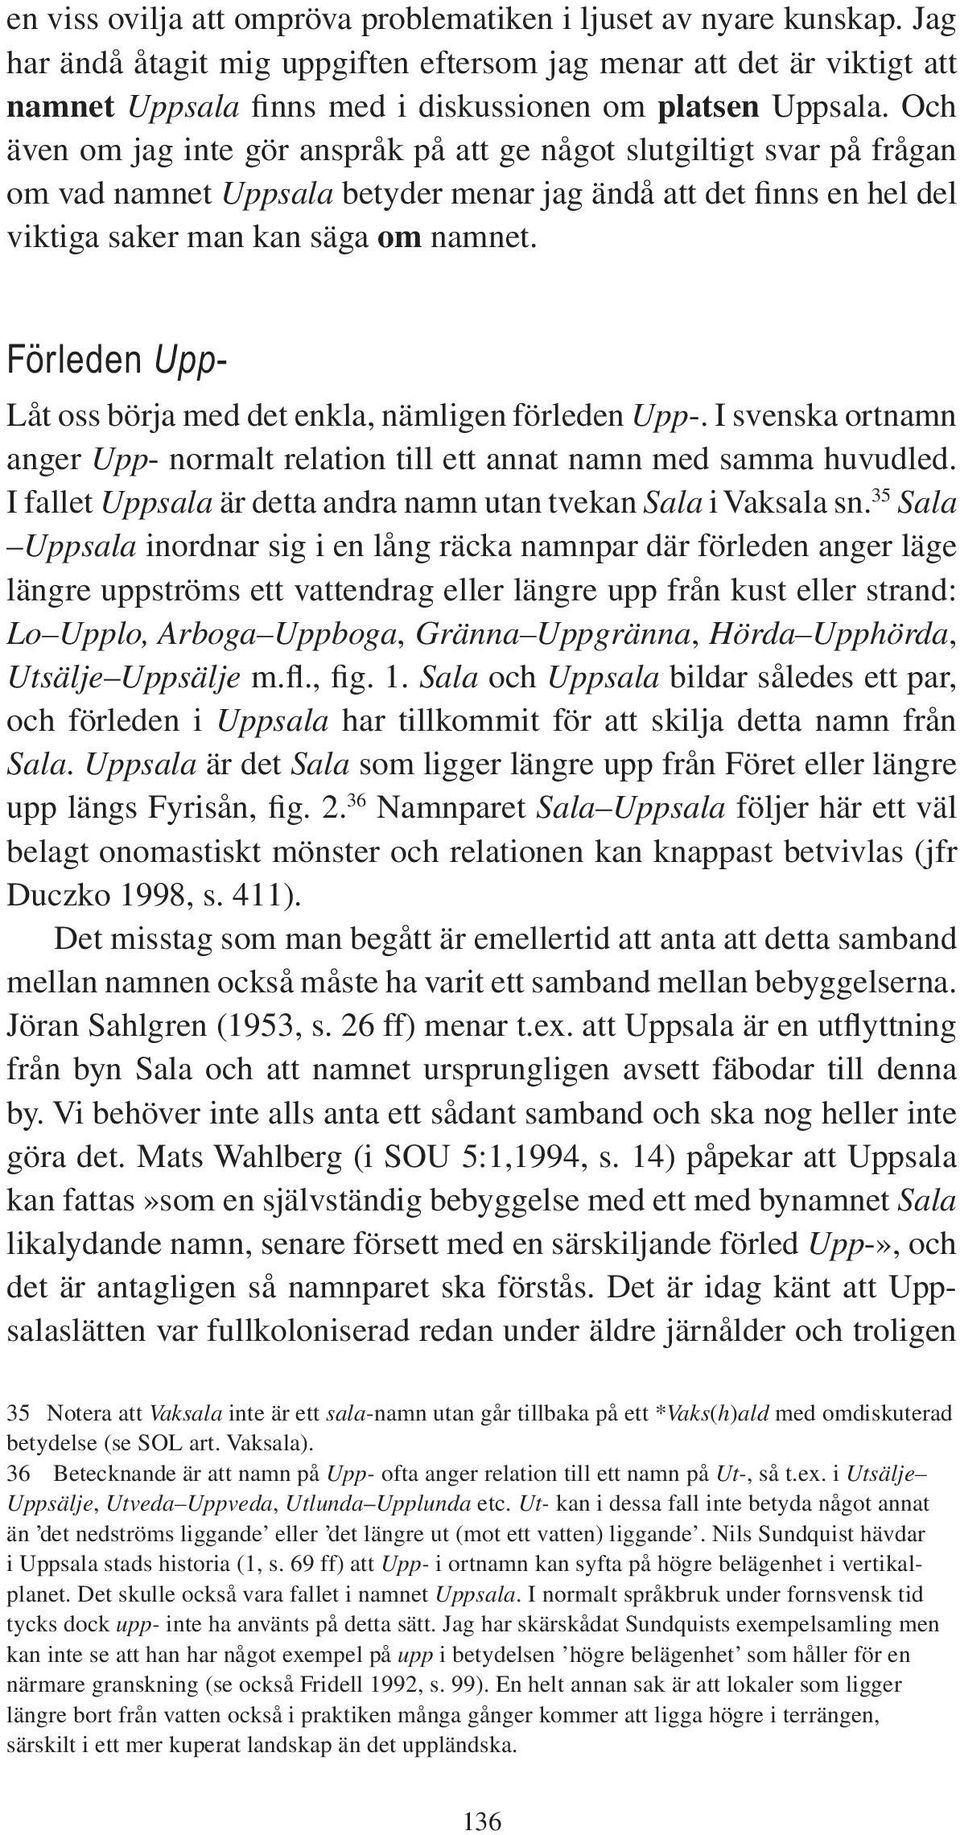 Och även om jag inte gör anspråk på att ge något slutgiltigt svar på frågan om vad namnet Uppsala betyder menar jag ändå att det finns en hel del viktiga saker man kan säga om namnet.